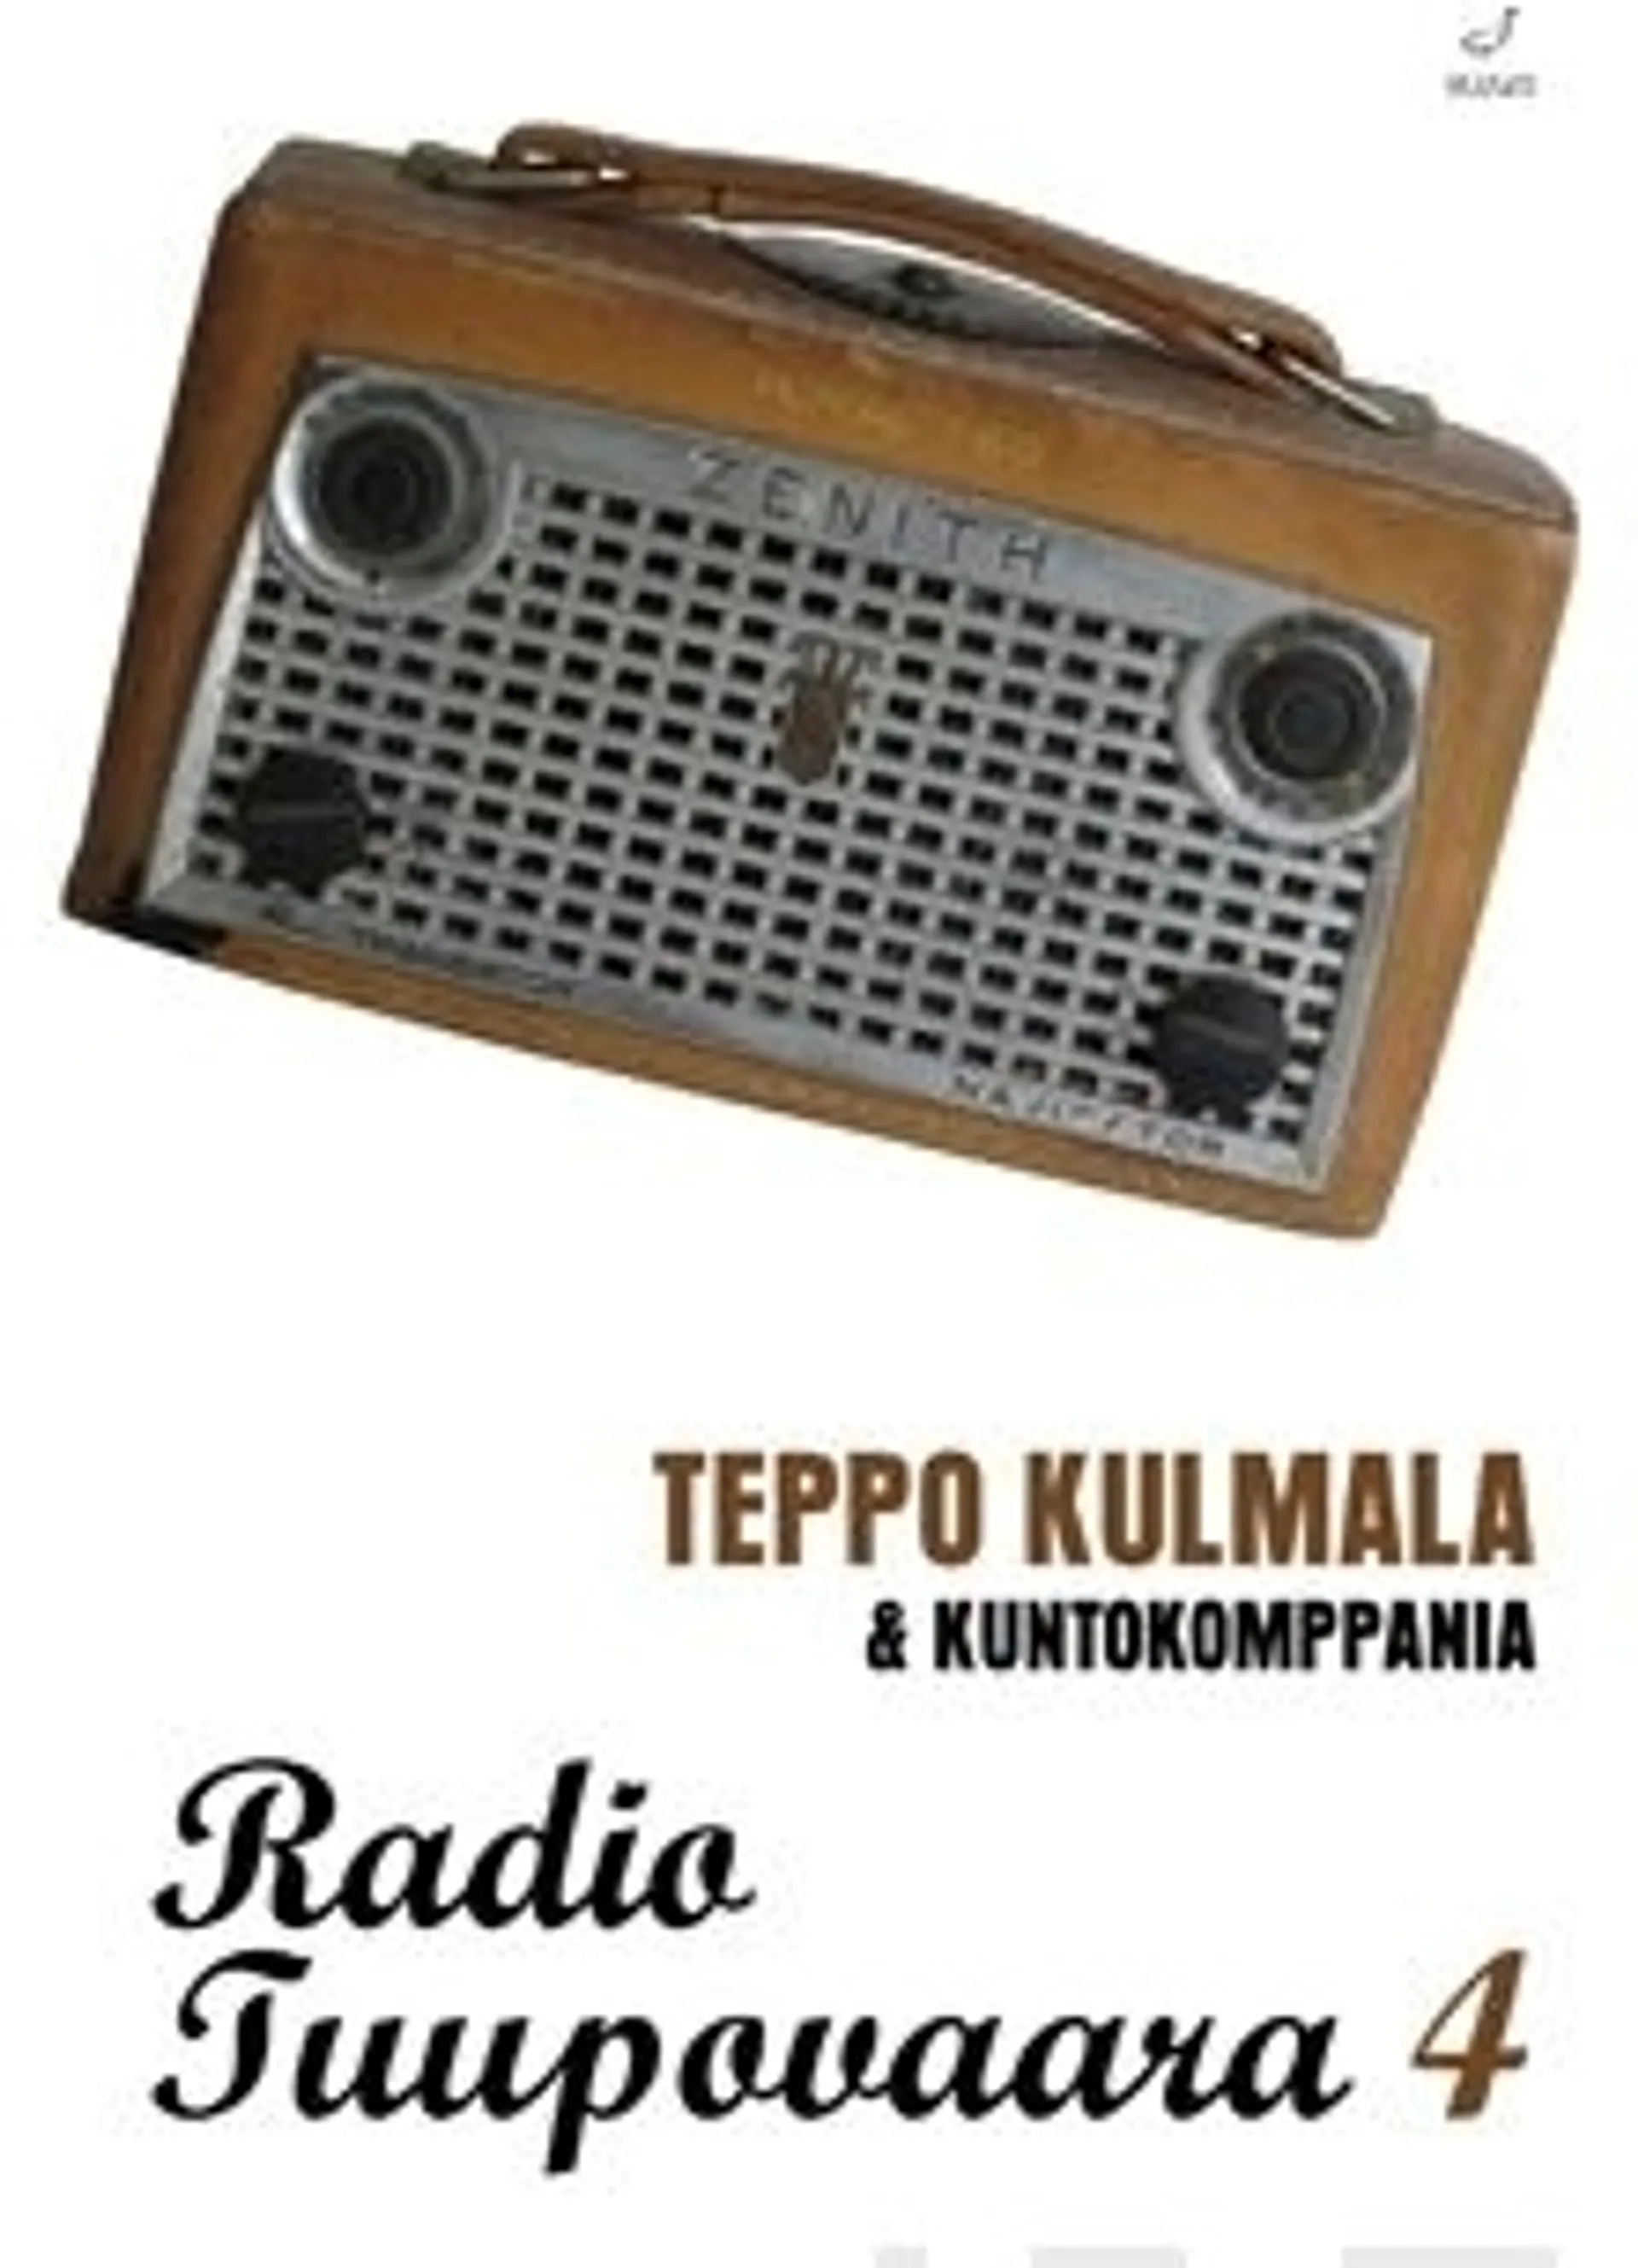 Kulmala, Radio Tuupovaara 4